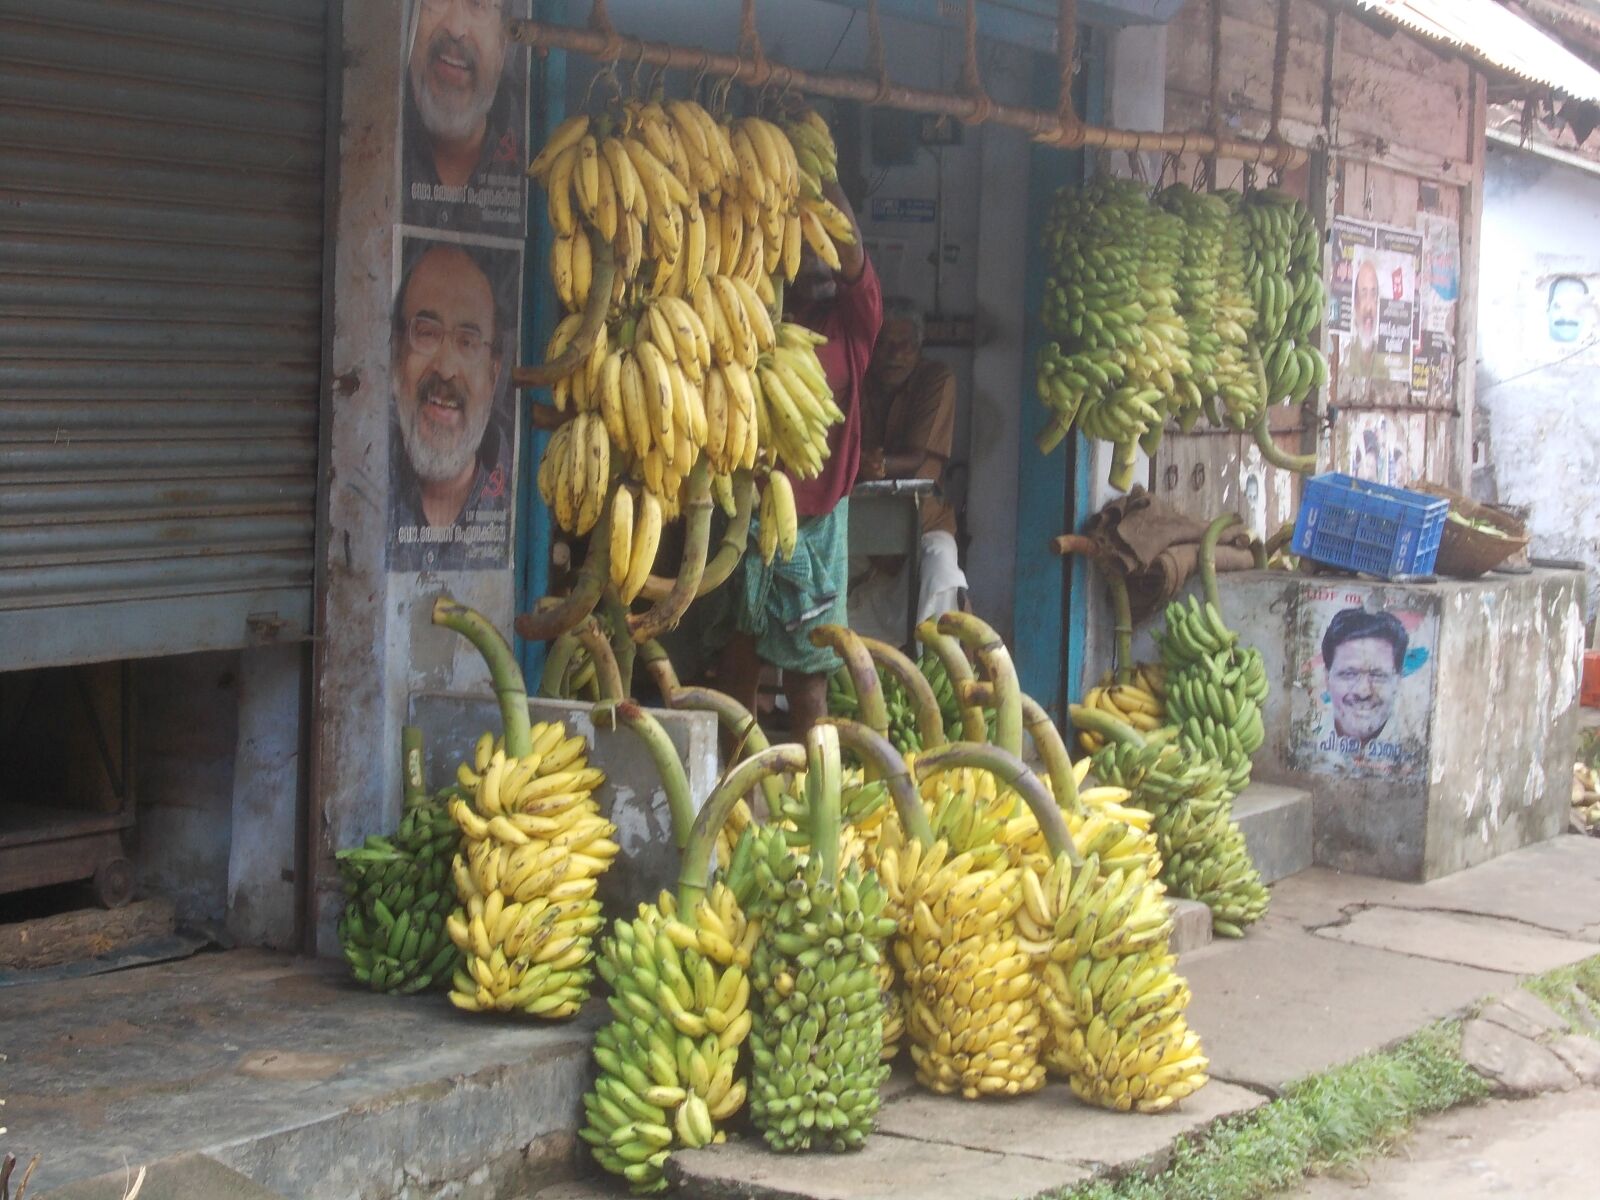 Nikon COOLPIX L23 sample photo. Banana, shop, rural india photography